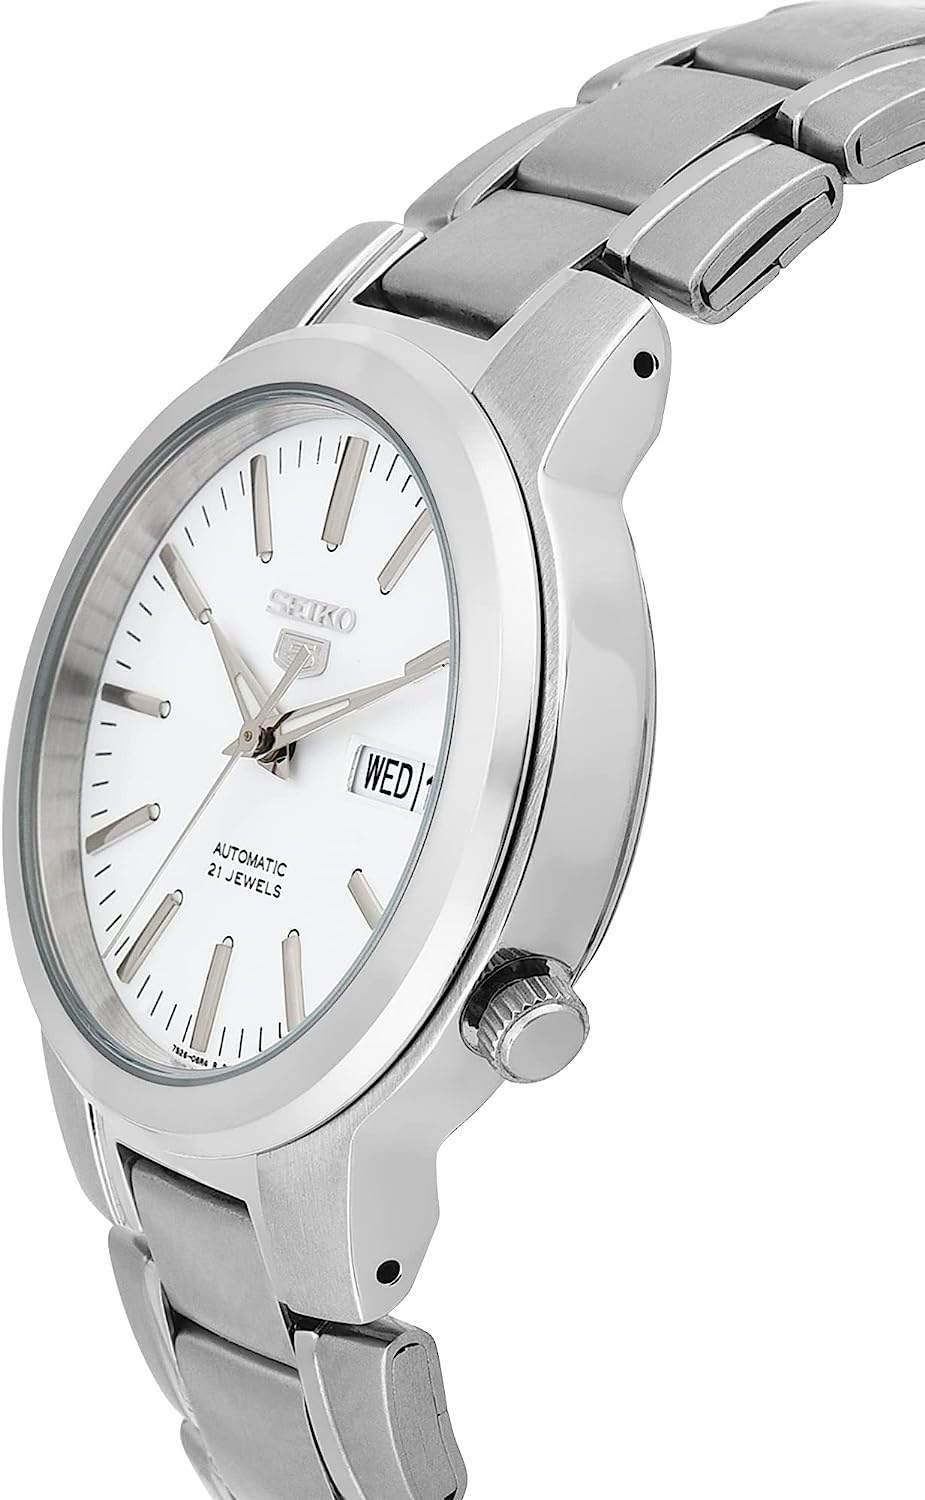 腕時計 セイコー メンズ SNKA01K1 SEIKO Men's SNKA01K1 Automatic White Dial Stainless  Steel Watch腕時計 セイコー メンズ SNKA01K1